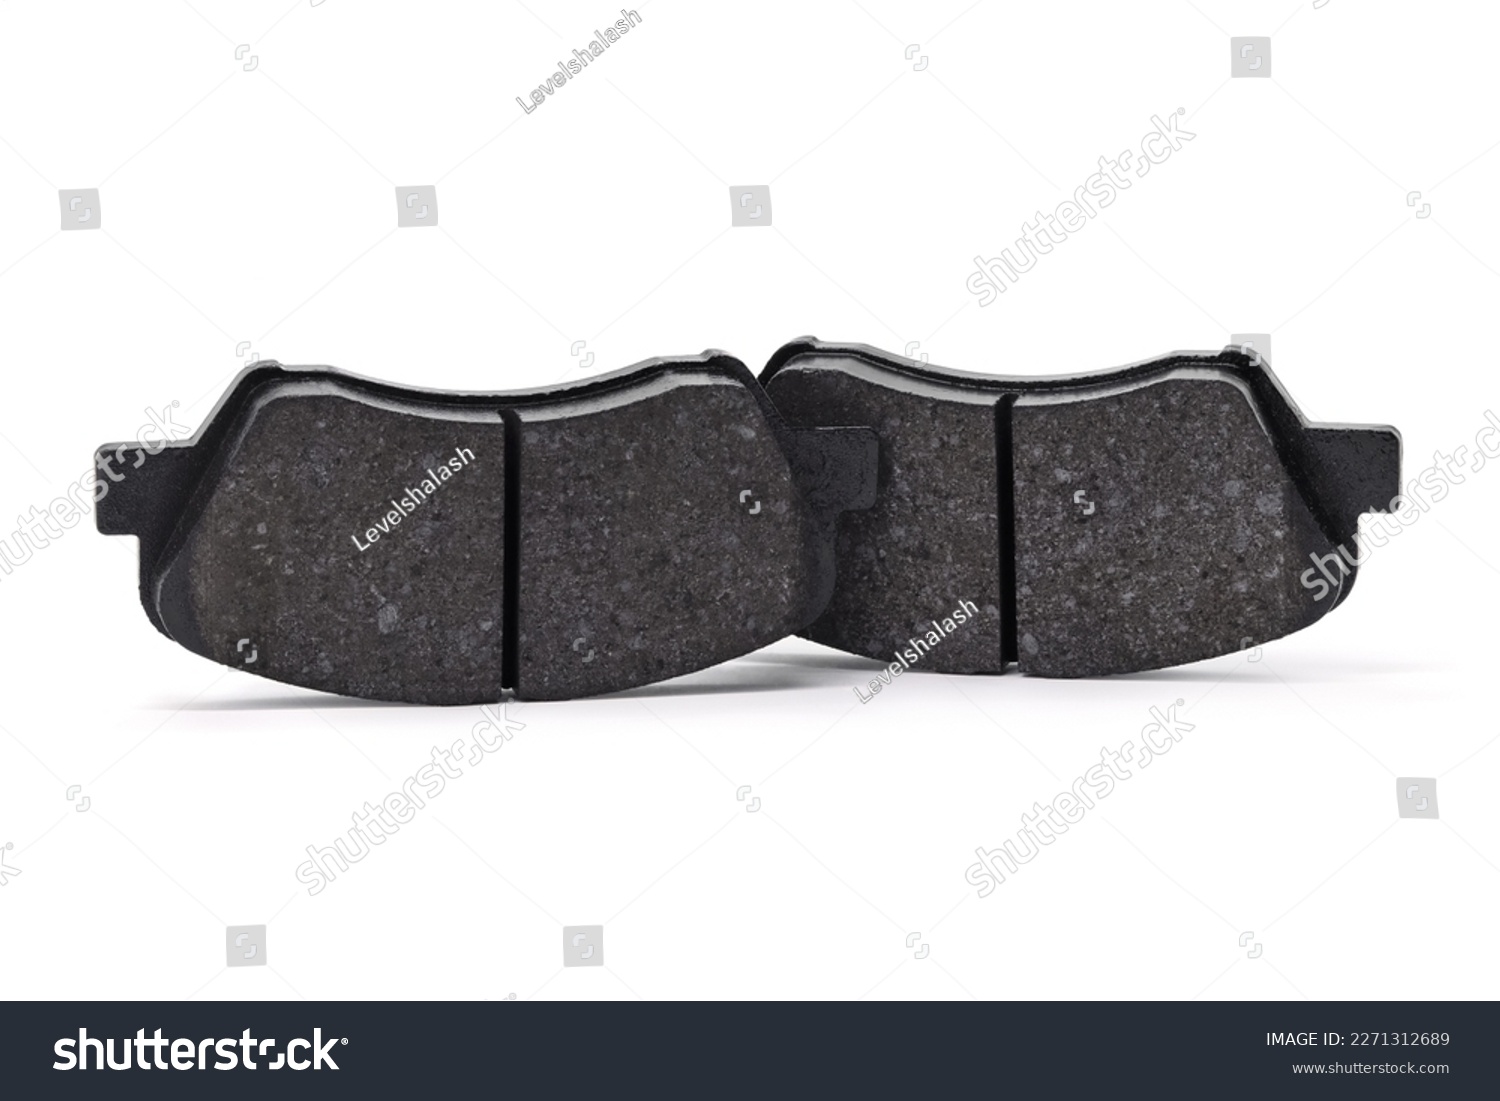 Brake pads for passenger car on white background #2271312689